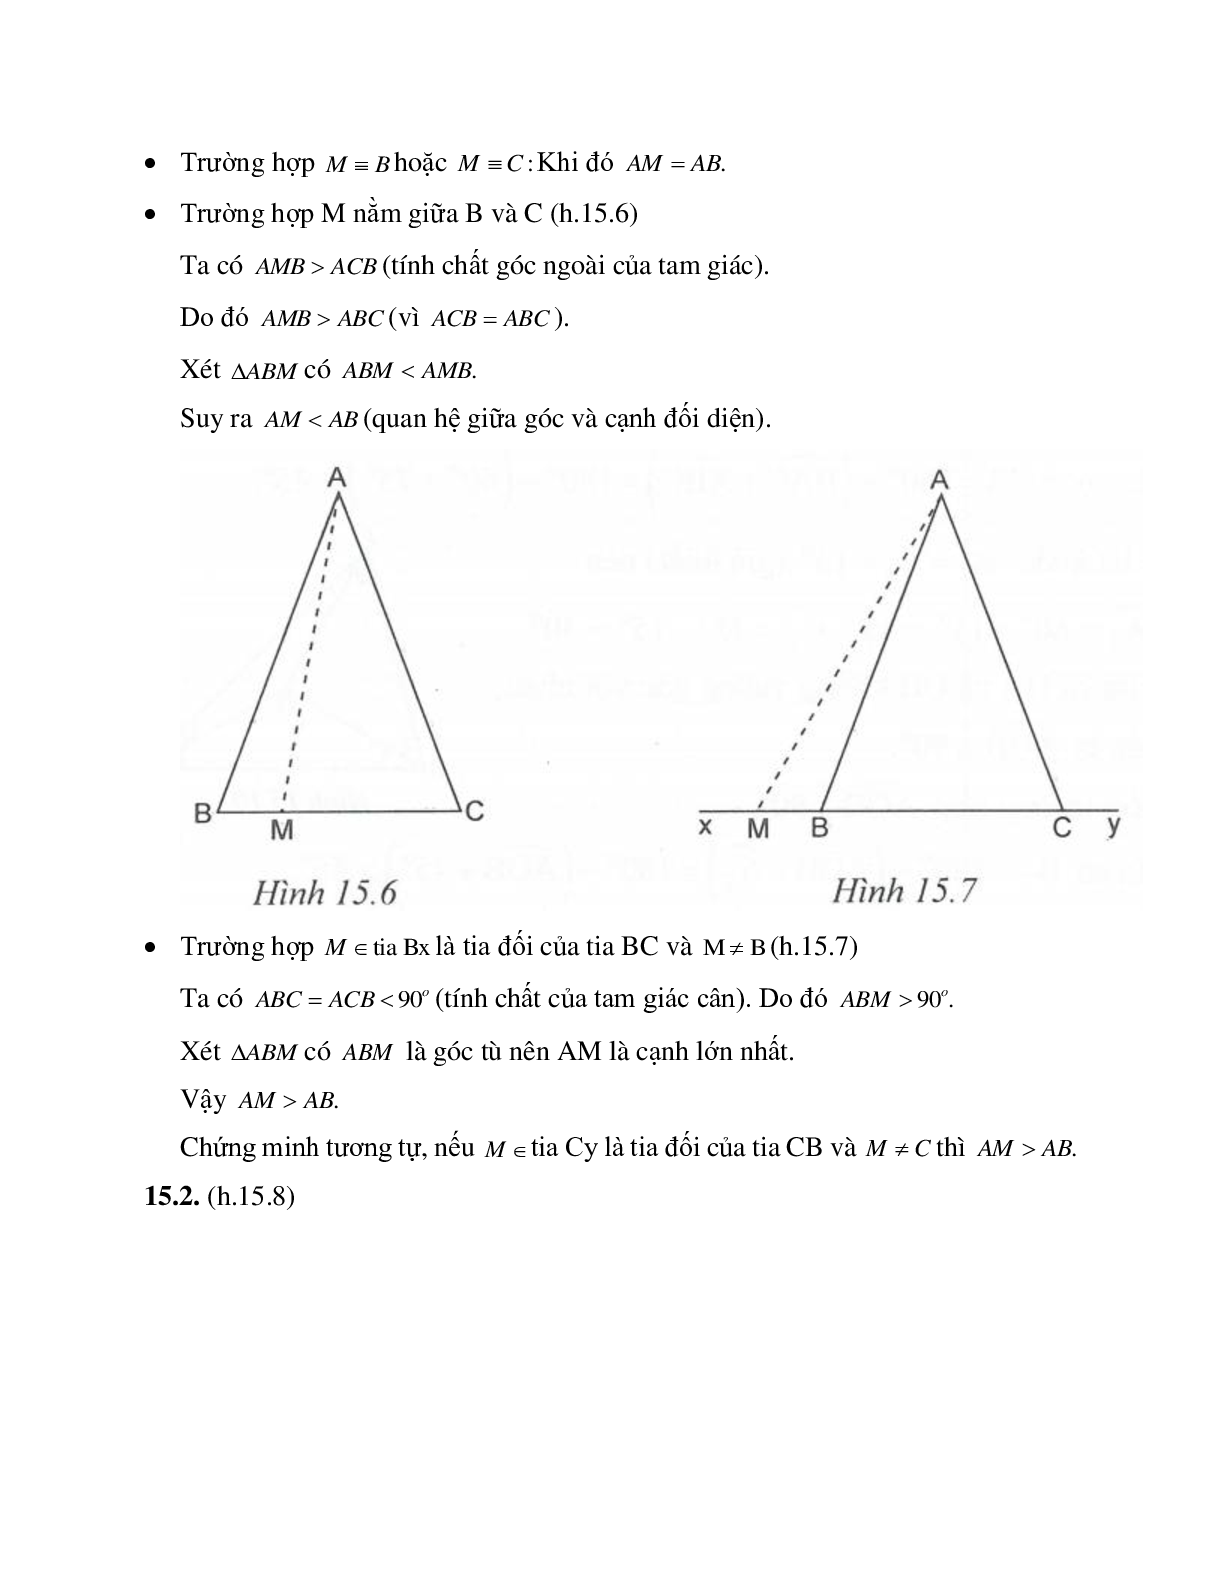 Phương pháp giải bài tập về Quan hệ giữa góc và cạnh đối diện trong một tam giác chọn lọc (trang 6)